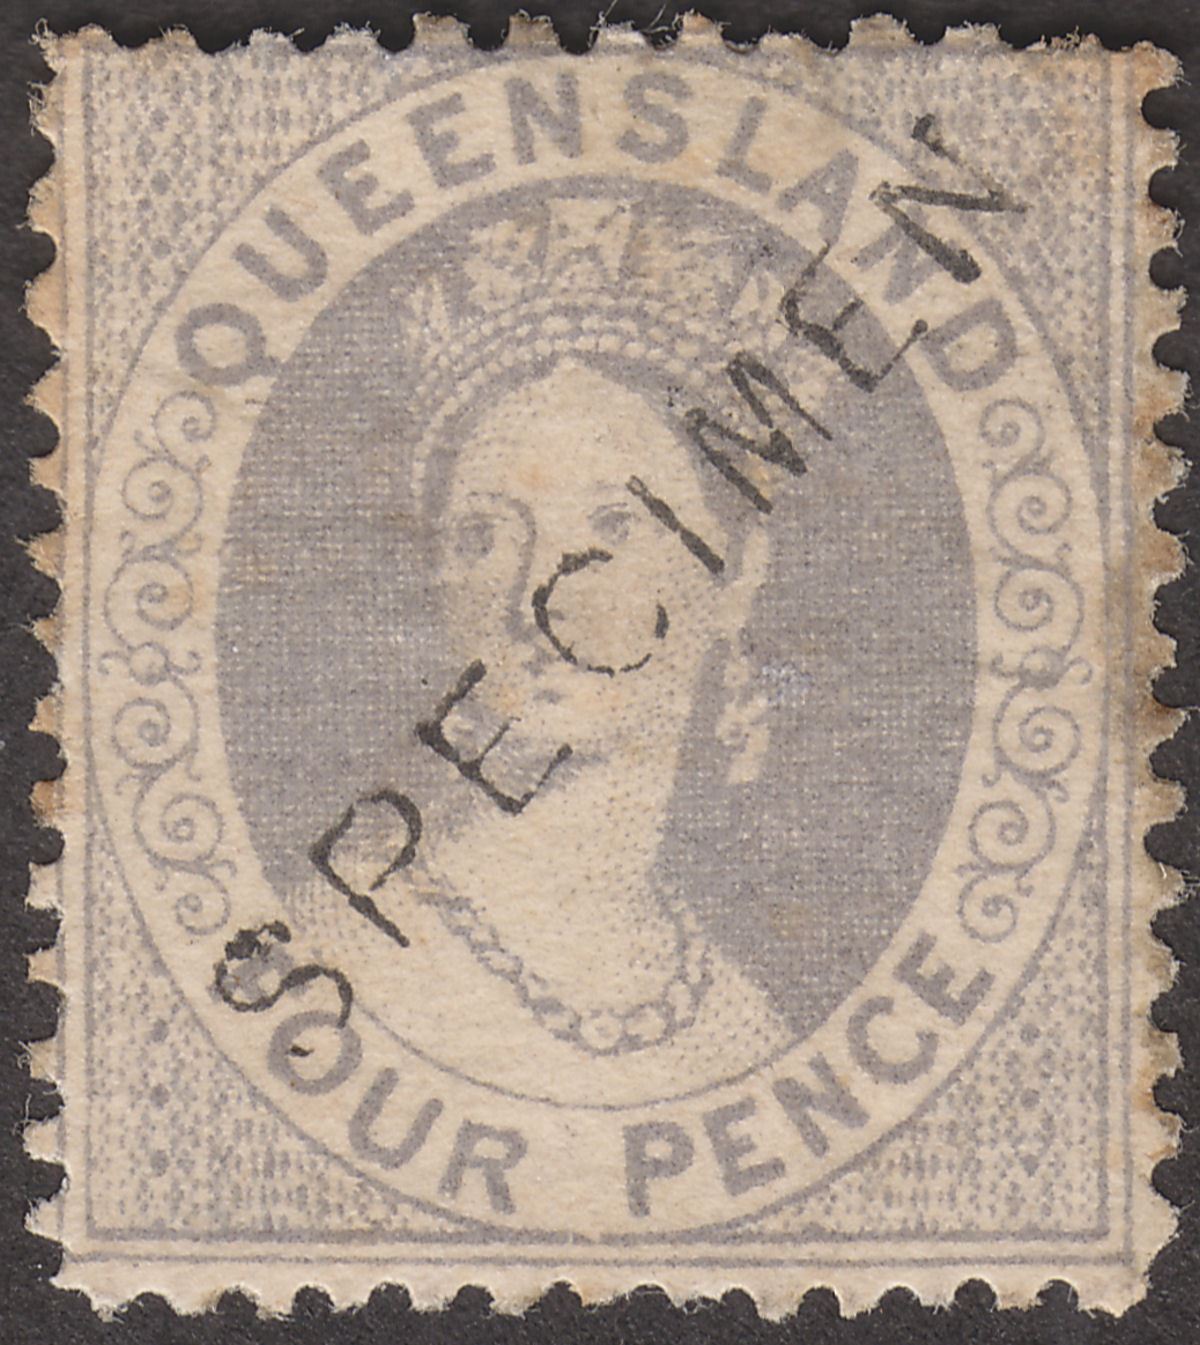 Queensland 1867 QV SPECIMEN Opt Chalon 4d Grey-Lilac Mint SG56s cat £60